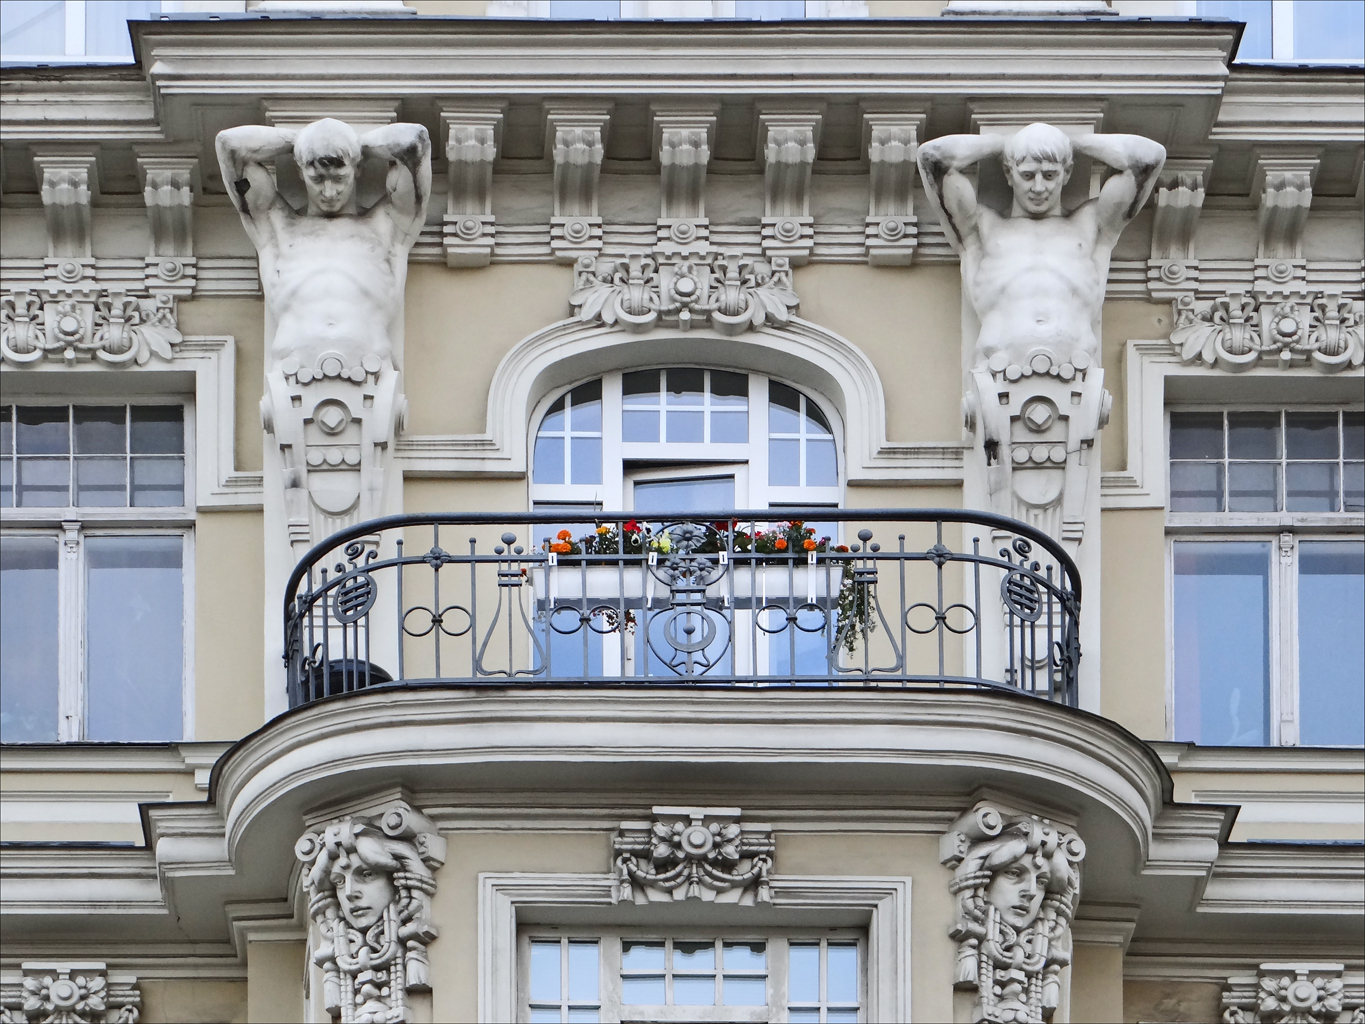 a balcony on a big building with some gargoyle around it